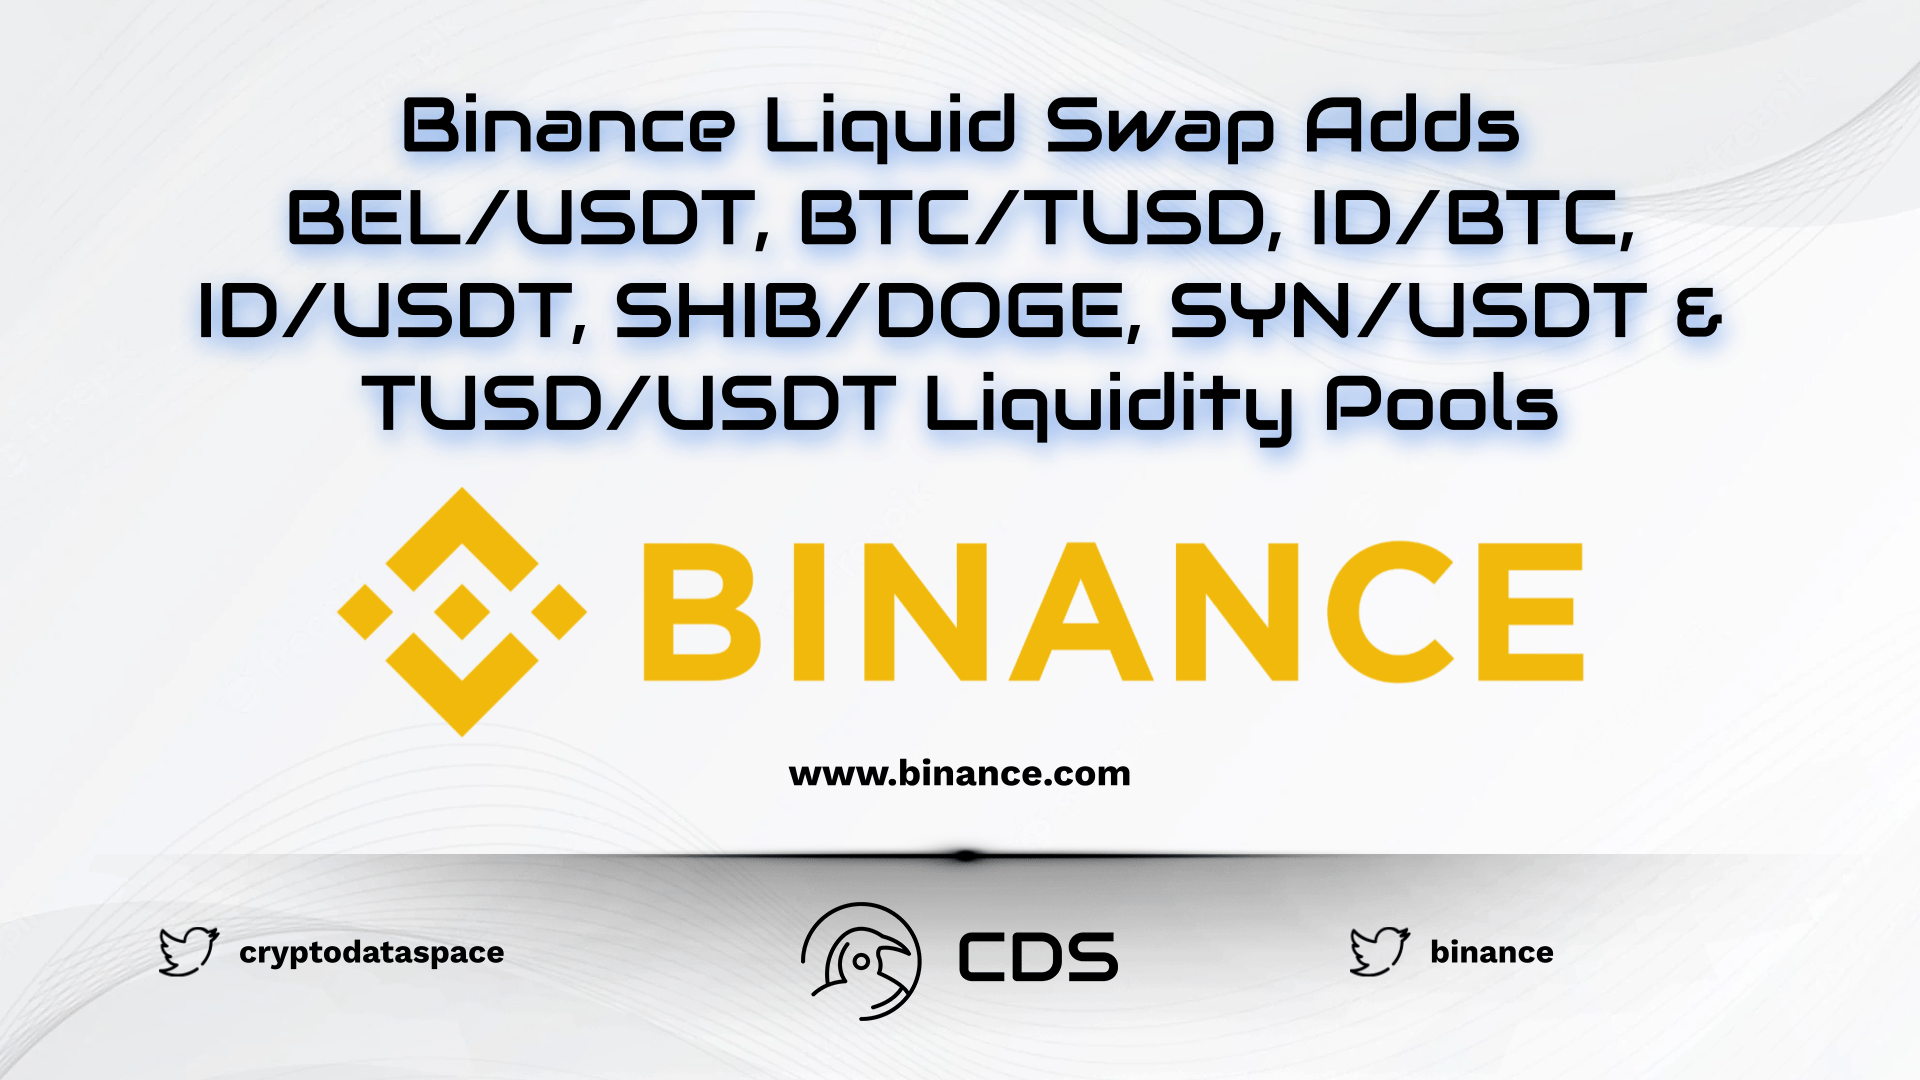 Binance Liquid Swap Adds BELUSDT, BTCTUSD, IDBTC, IDUSDT, SHIBDOGE, SYNUSDT & TUSDUSDT Liquidity Pools